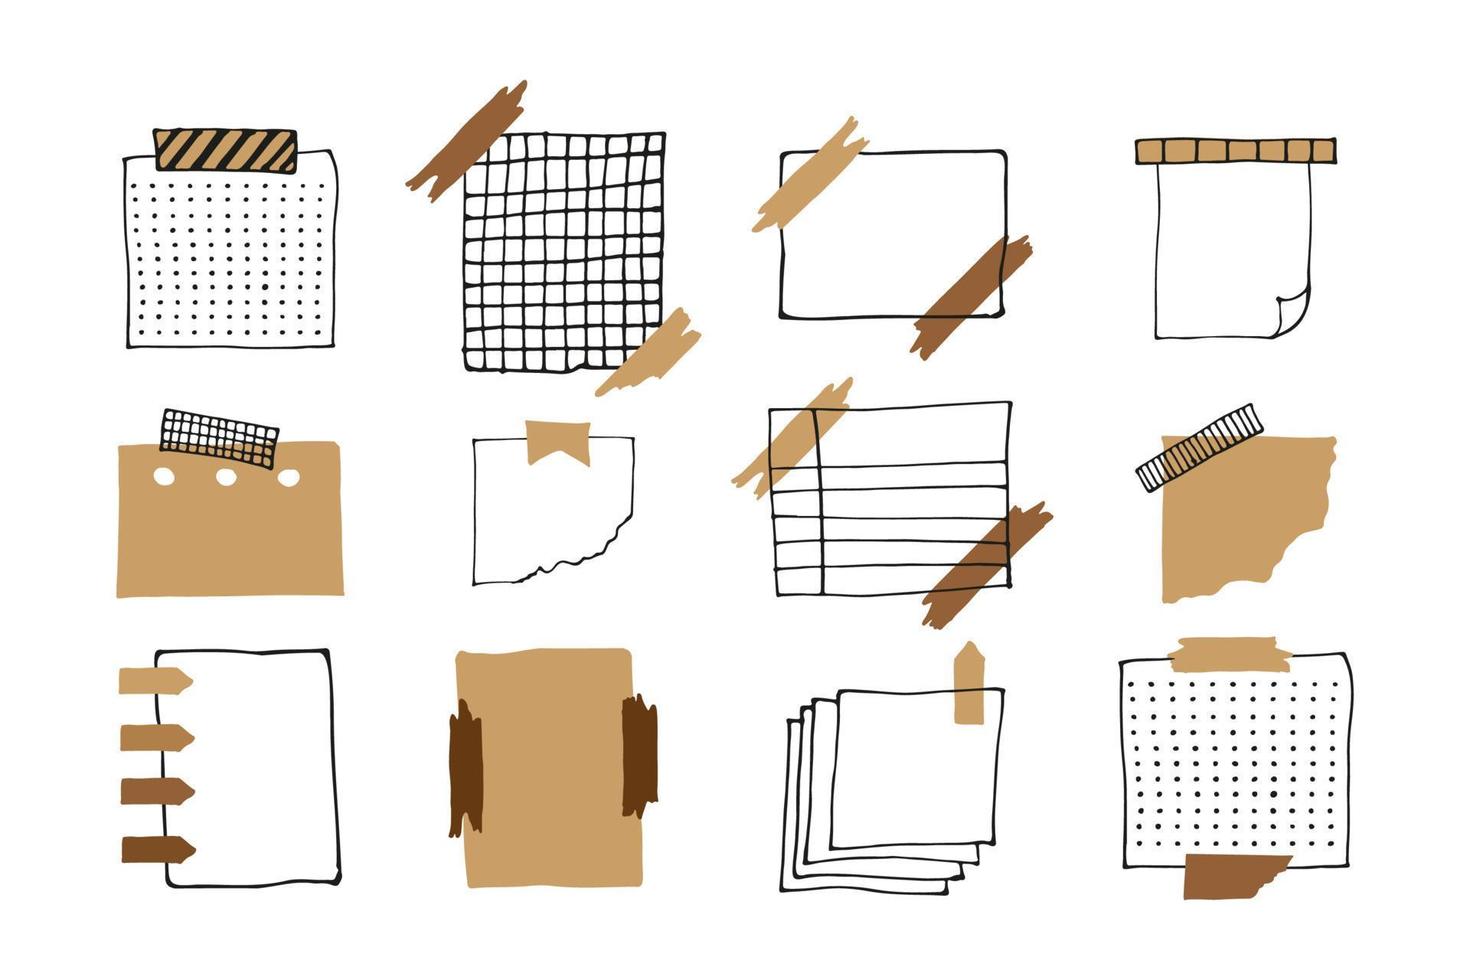 note di carta promemoria vuote, raccolta di doodle del pianificatore. illustrazione di schizzo disegnato a mano di vettore